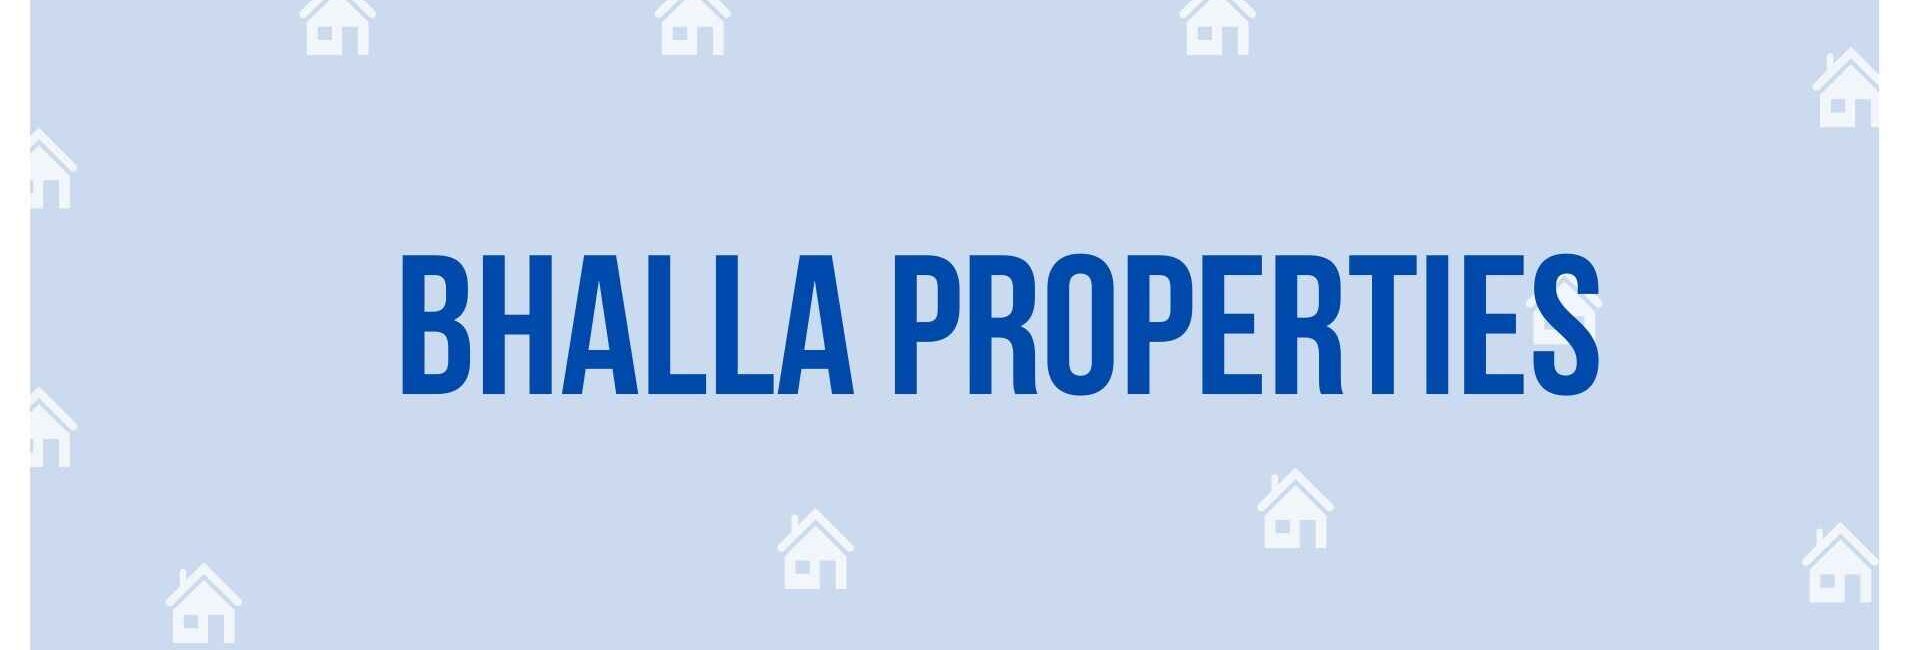 Bhalla Properties - Property Dealer in Noida